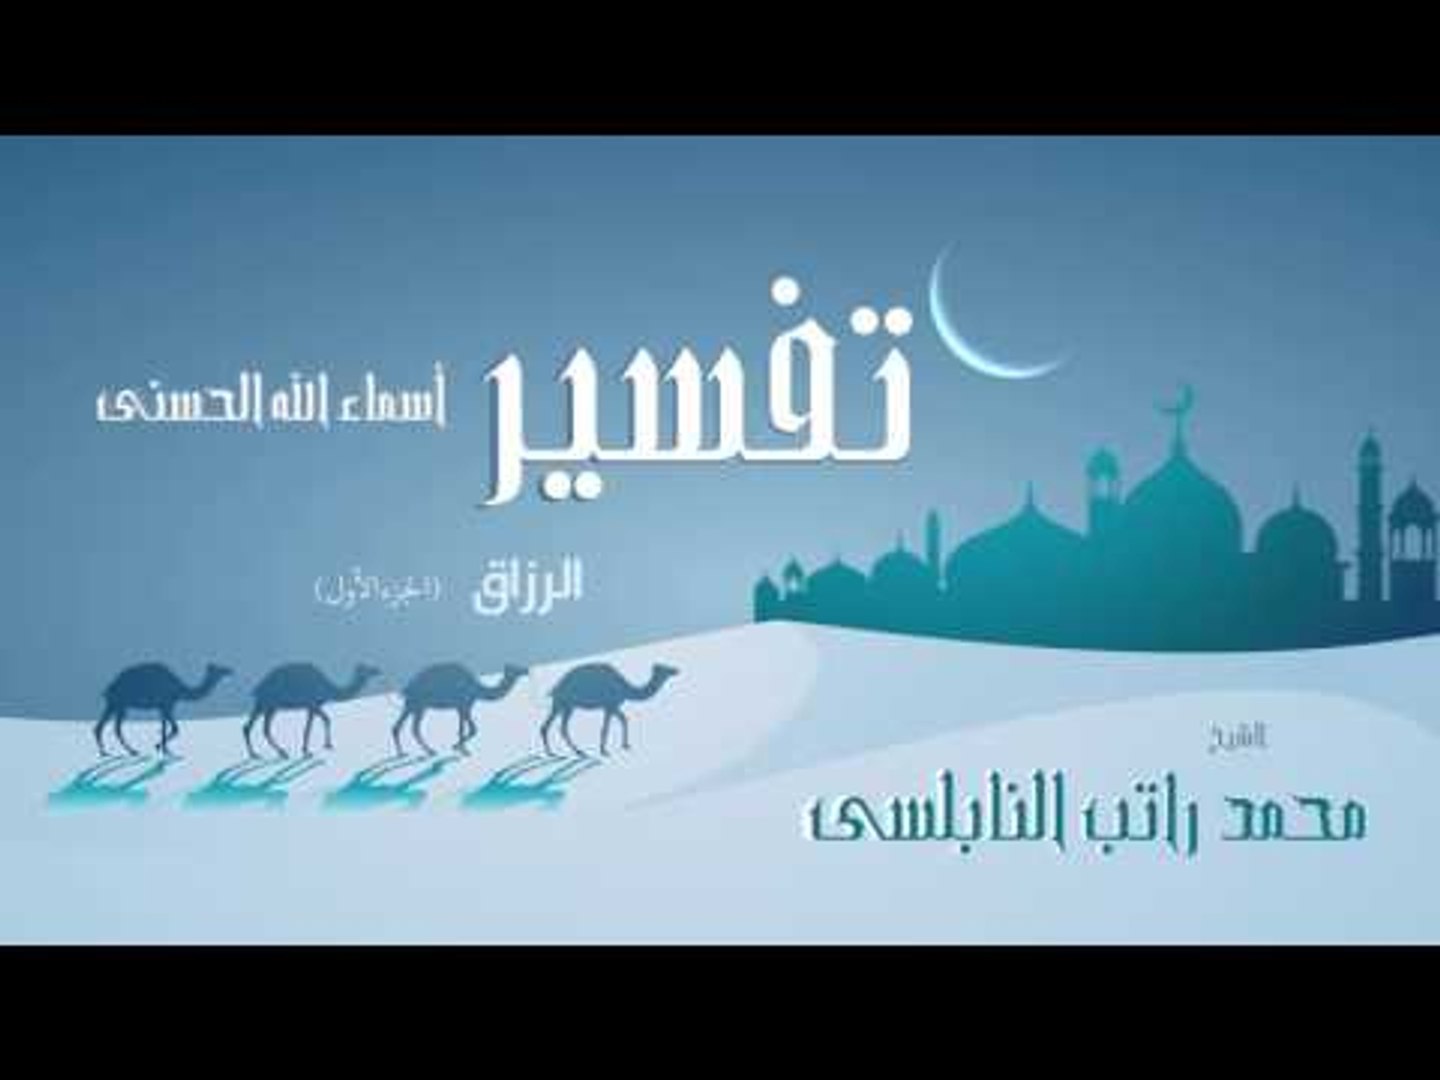 تفسير أسماء الله الحسنى الرزاق الجزء الأول للشيخ محمد راتب النابلسى فيديو Dailymotion